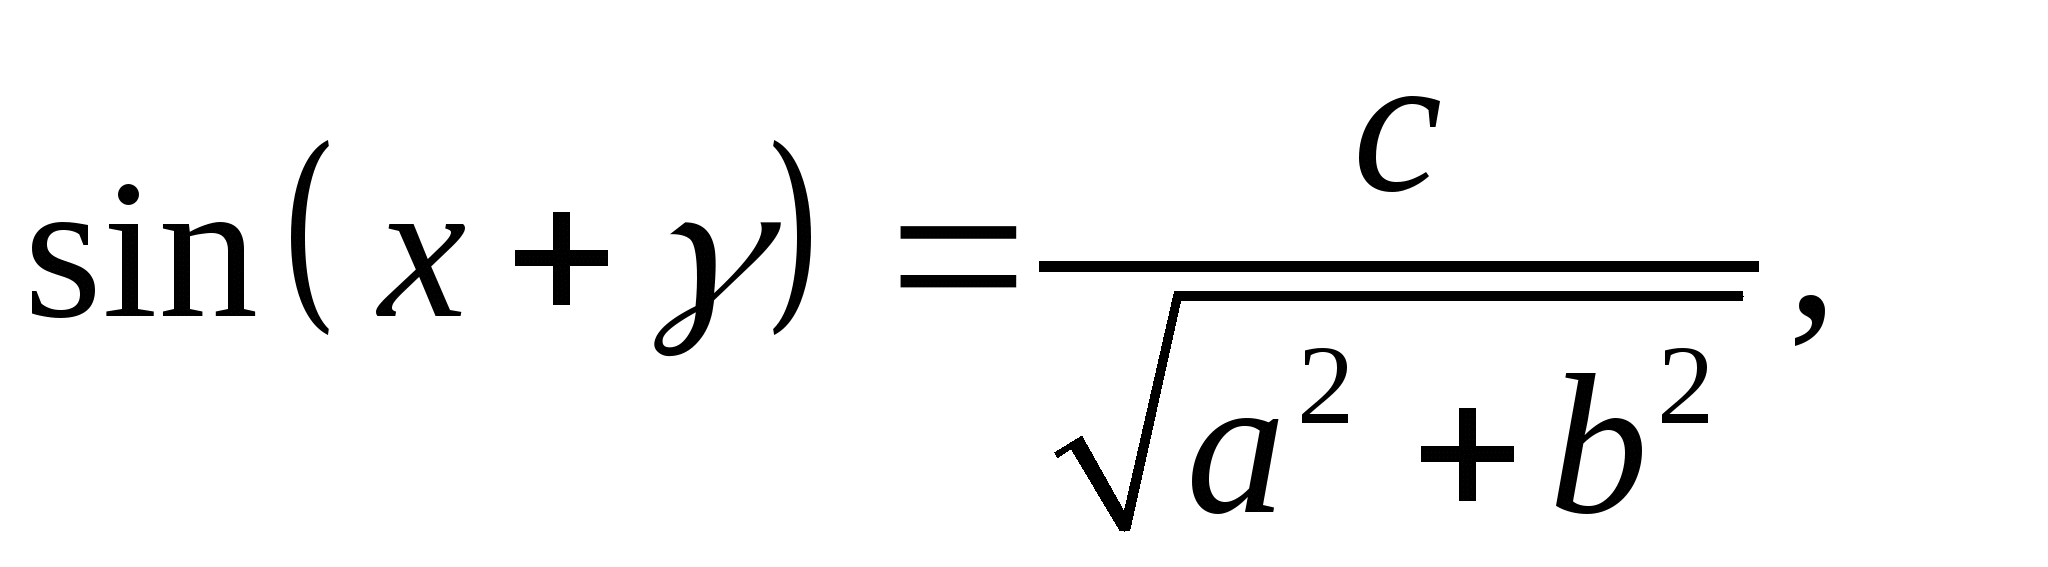 Справочный материал по теме Решение тригонометрических уравнений